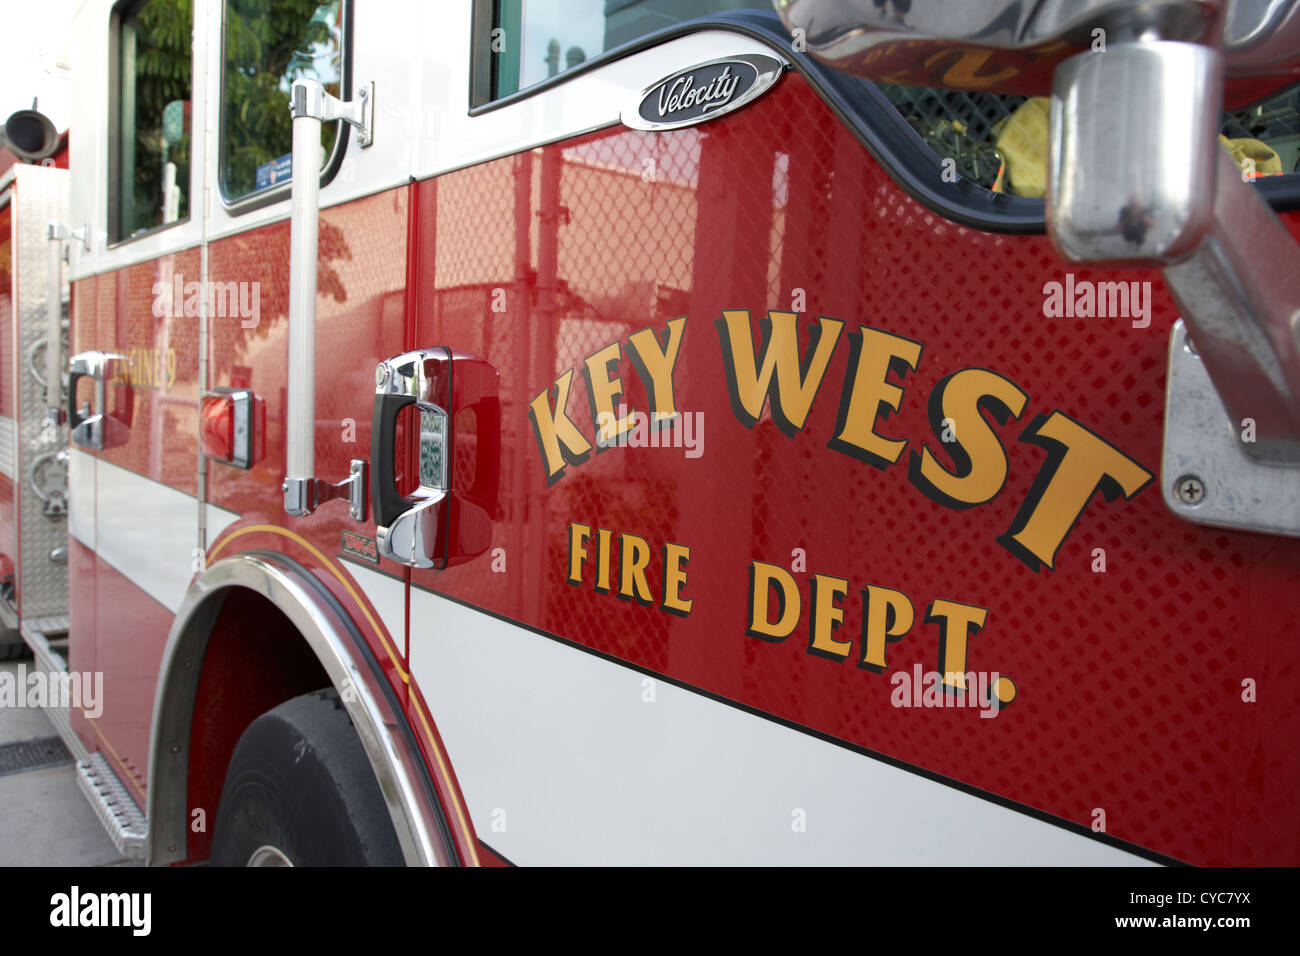 key west fire dept engine vehicle florida usa Stock Photo